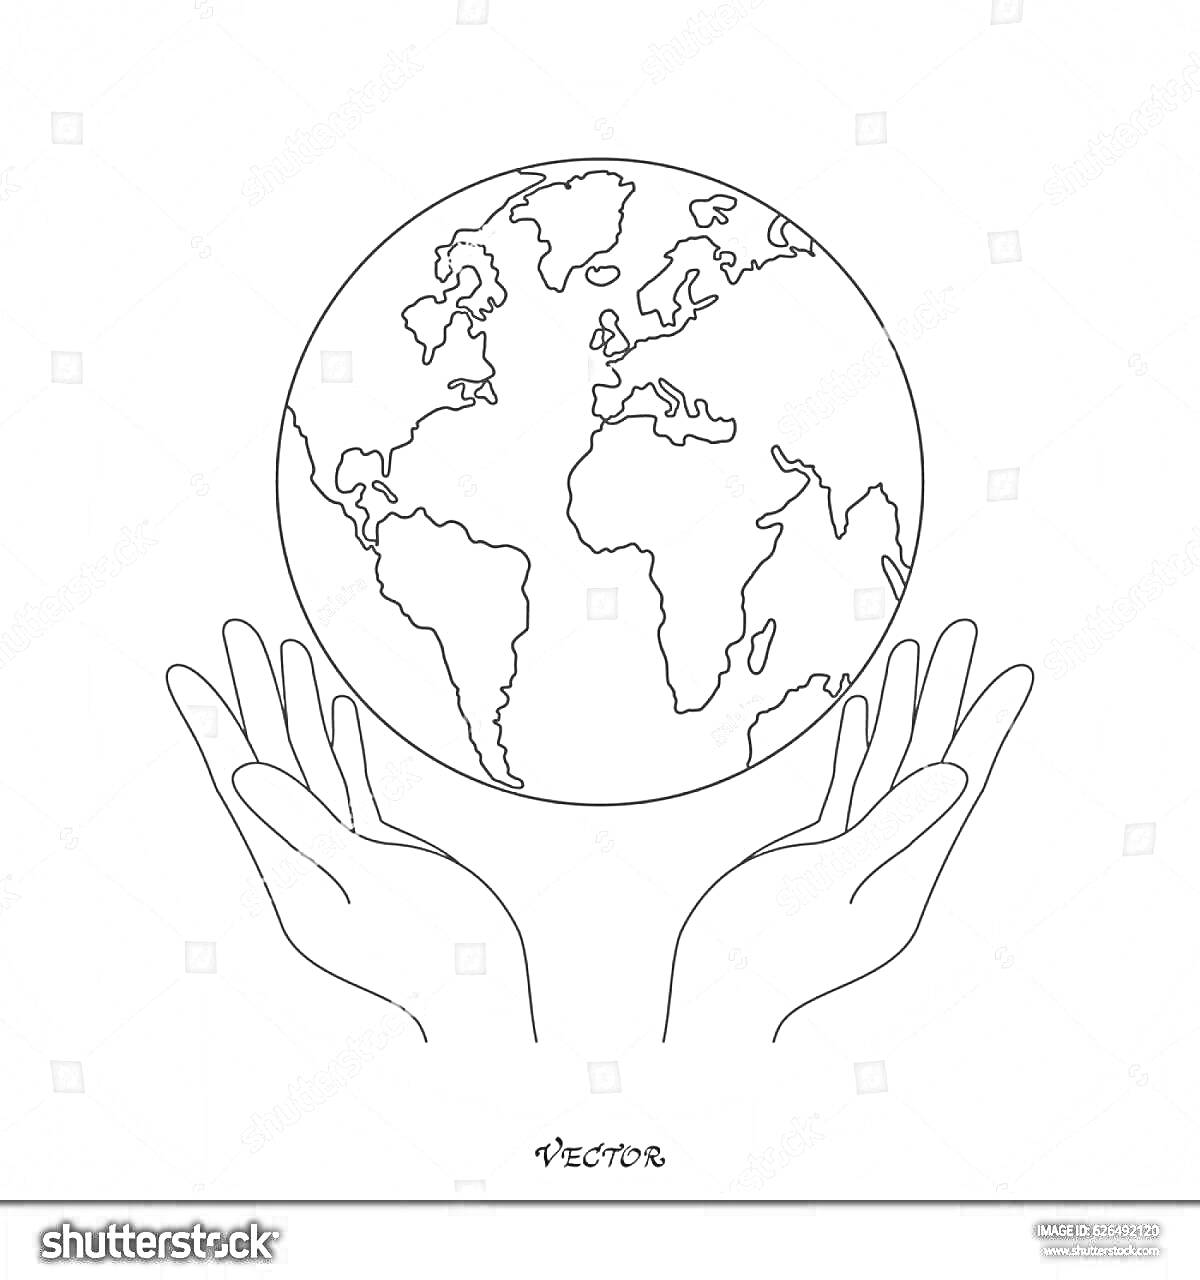 На раскраске изображено: Земля, Руки, Здоровье, Экология, Окружающая среда, Защита природы, Забота, Ответственность